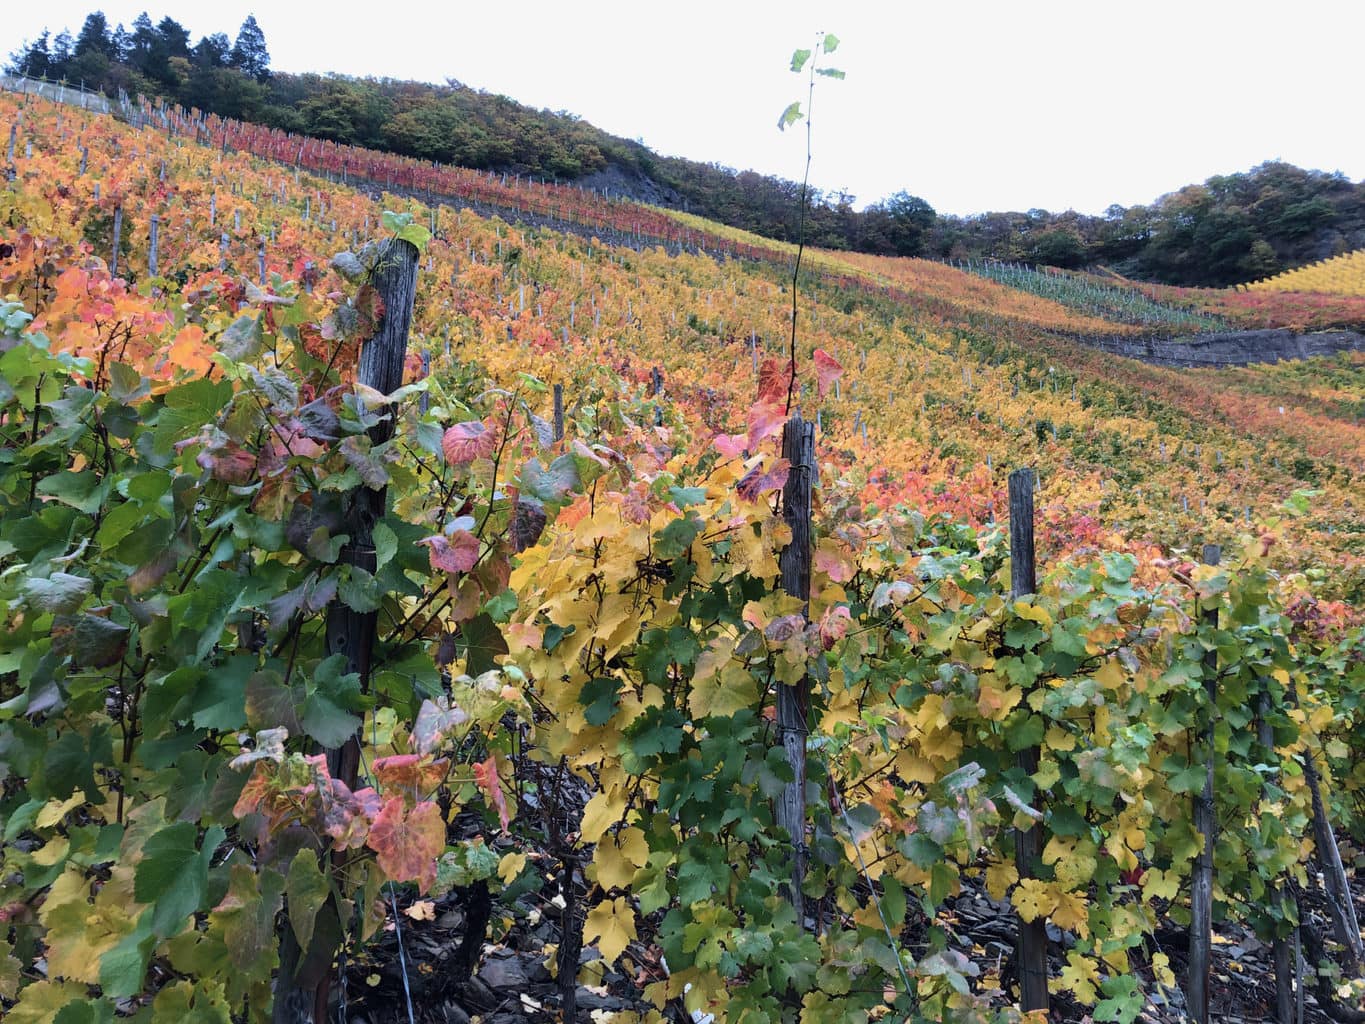 De wijnbergen in de buurt van Dernau in Rijnland-Palts zijn op dramatische manier ingekleurd